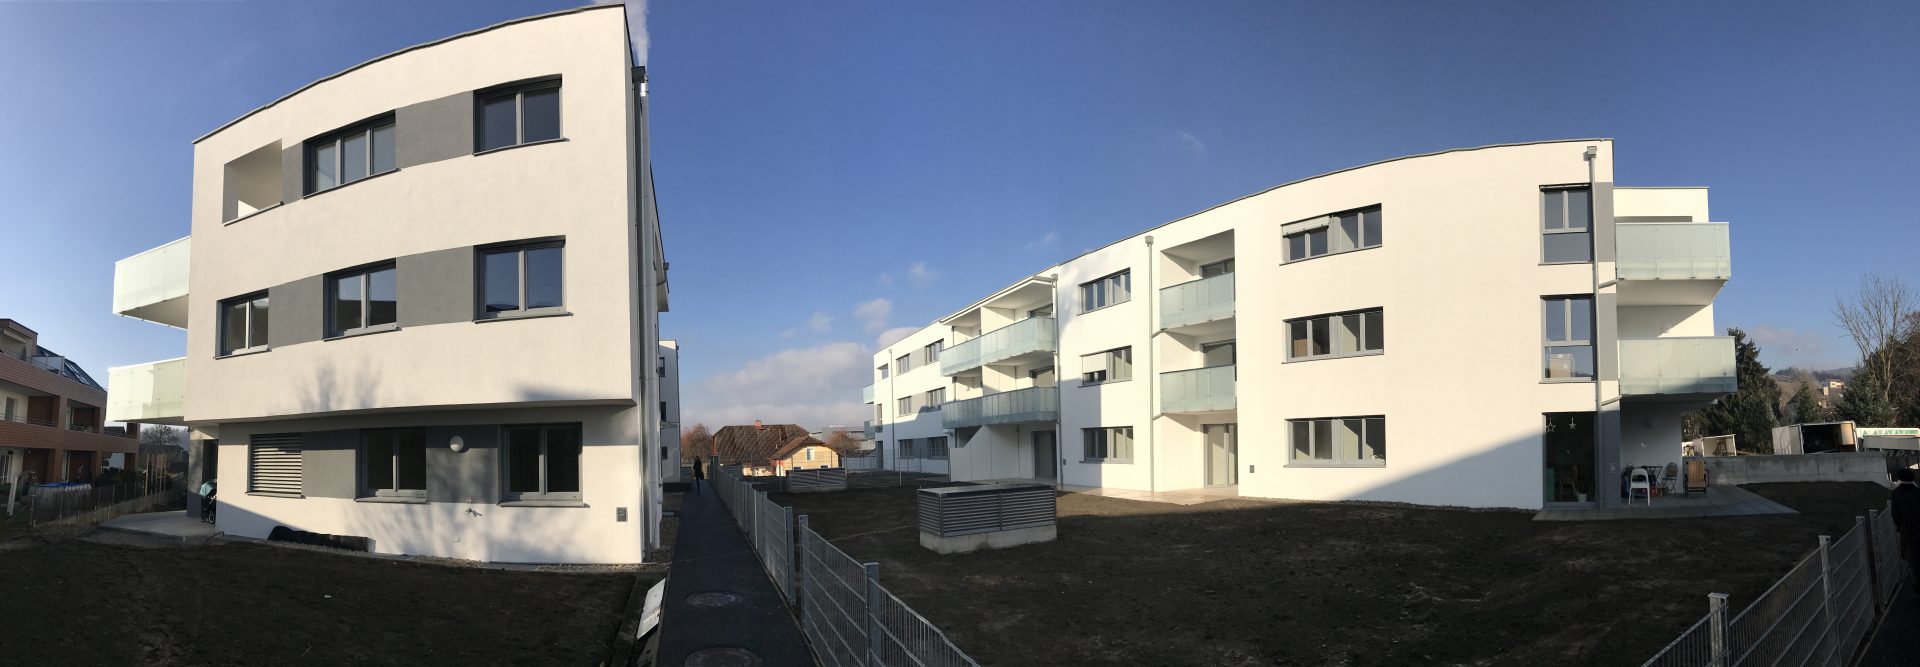 Eigentumswohnungen in Urfahr/Katzbach - Fertiggestellte Projekte - Hentschläger Immobilien